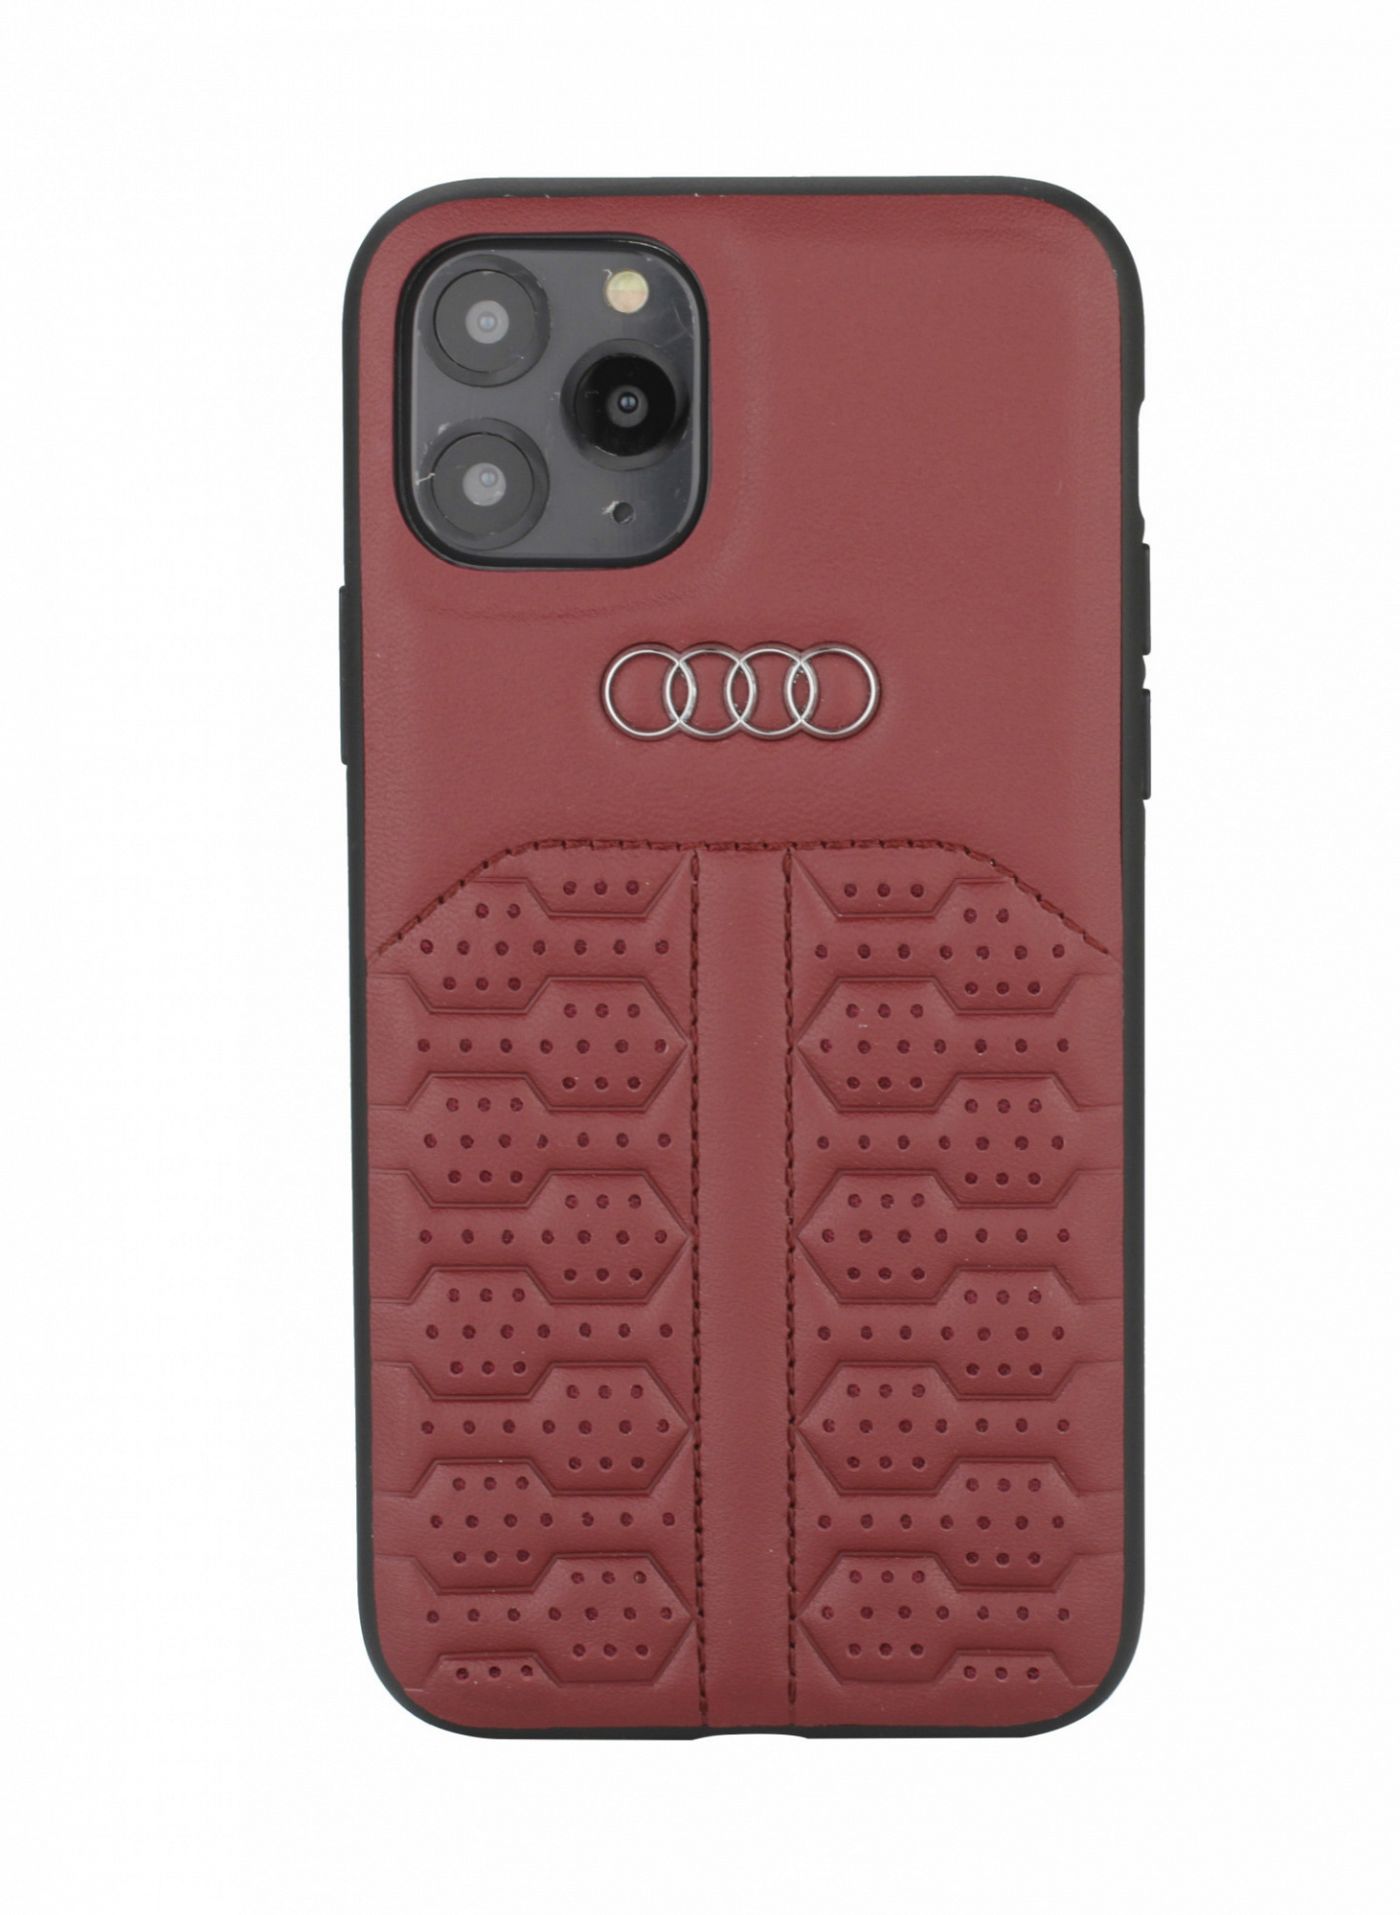 nicht Vloeibaar klap Audi Apple iPhone 12 / iPhone 12 pro Merlot Back cover hoesje A6 Serie -  Genuine Leather - GSM Centre Westermarkt ✓🚚 Voor 20:00 besteld morgen in  huis ✓